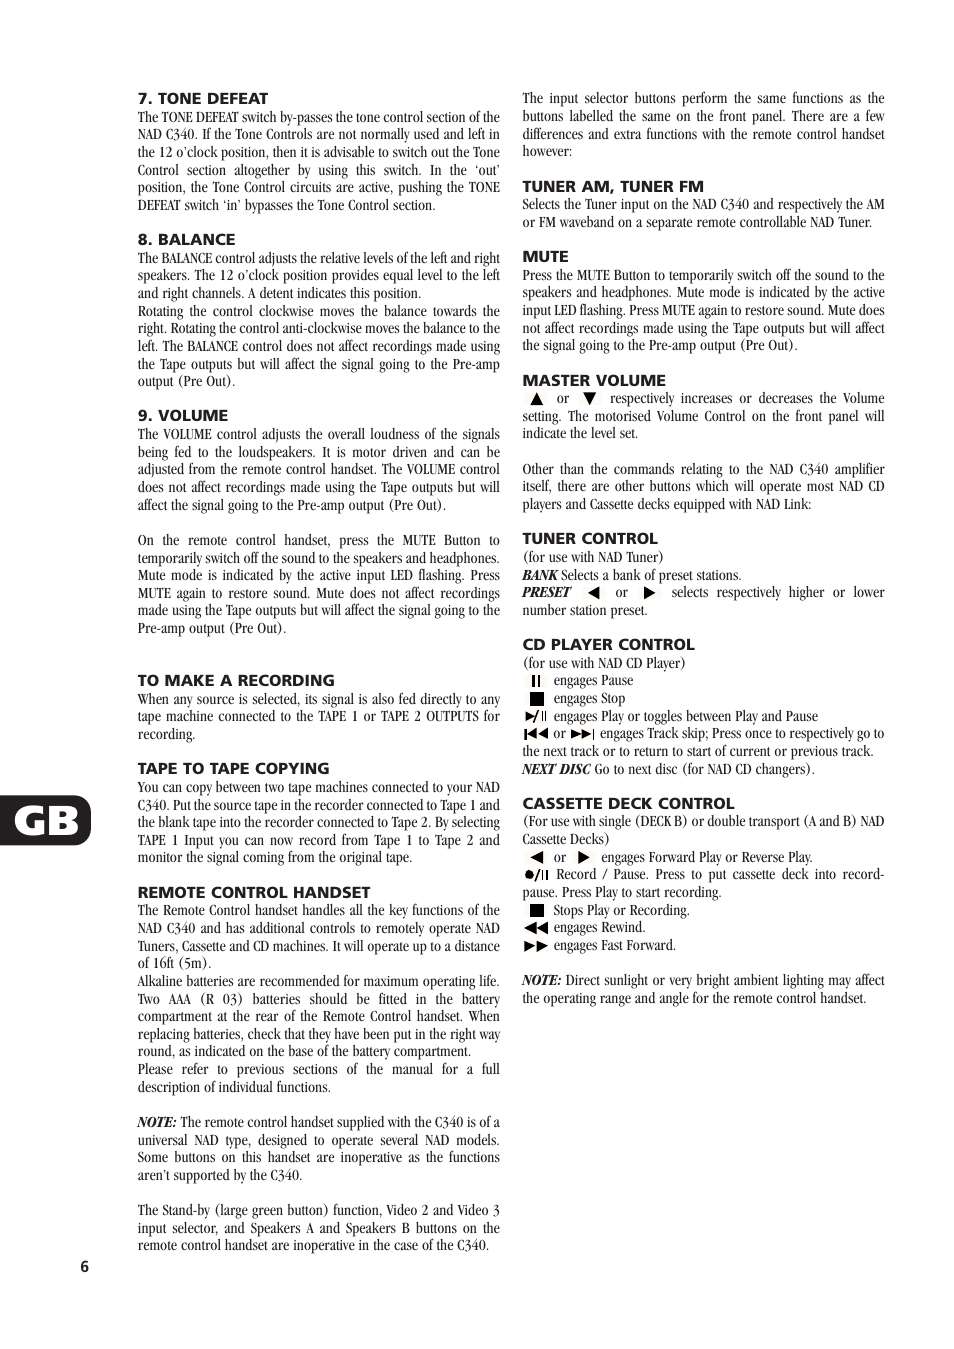 NAD C340 Manual Page 6 36